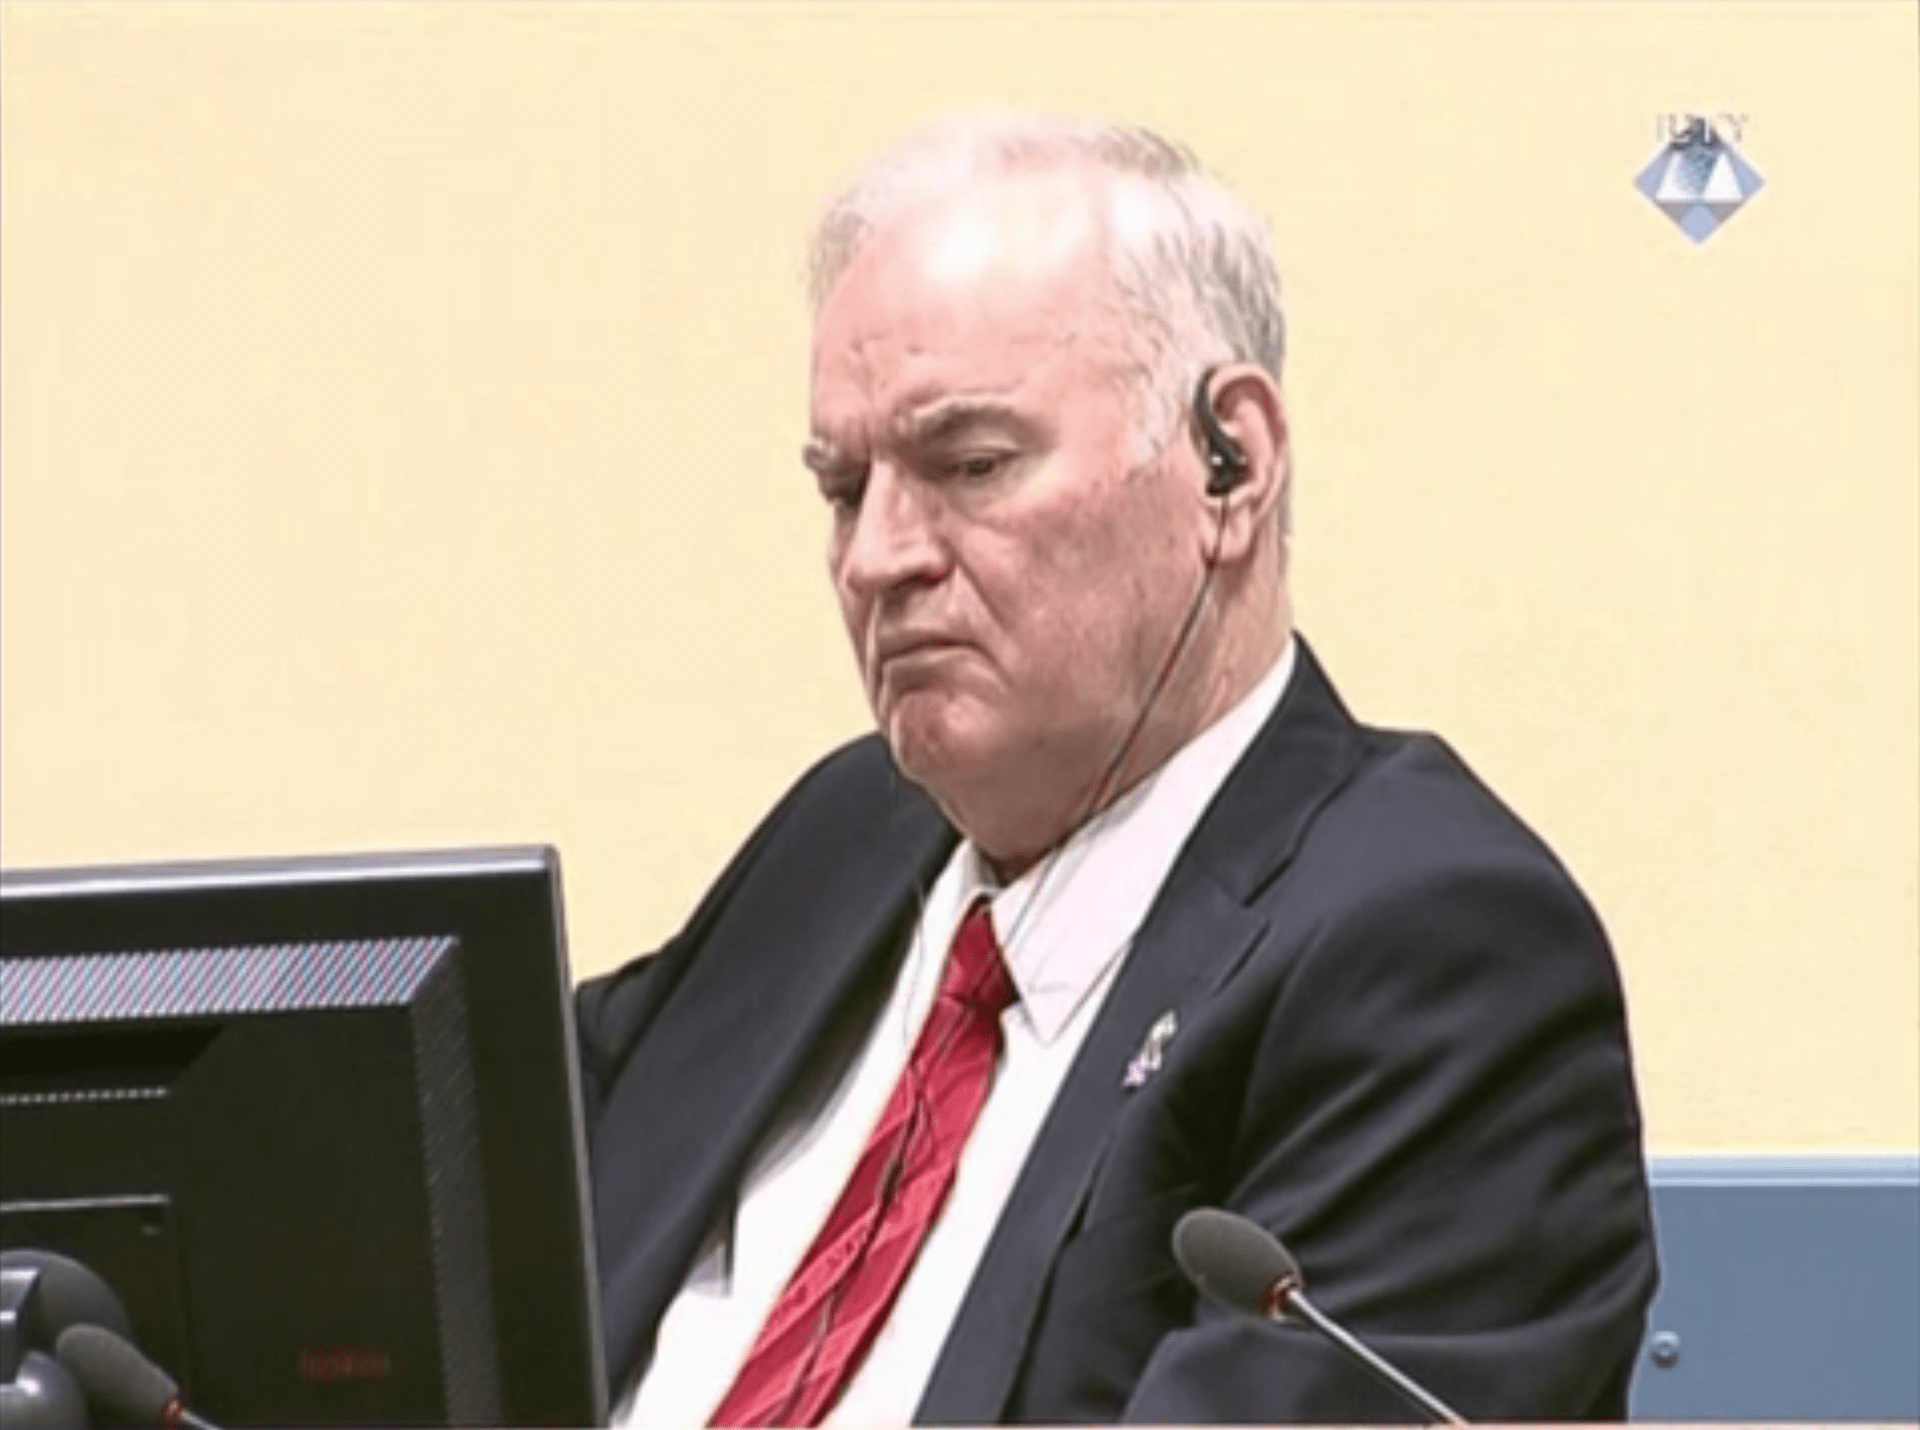 Bosenskosrbský generál Ratko Mladić byl odsouzen k doživotnímu trestu